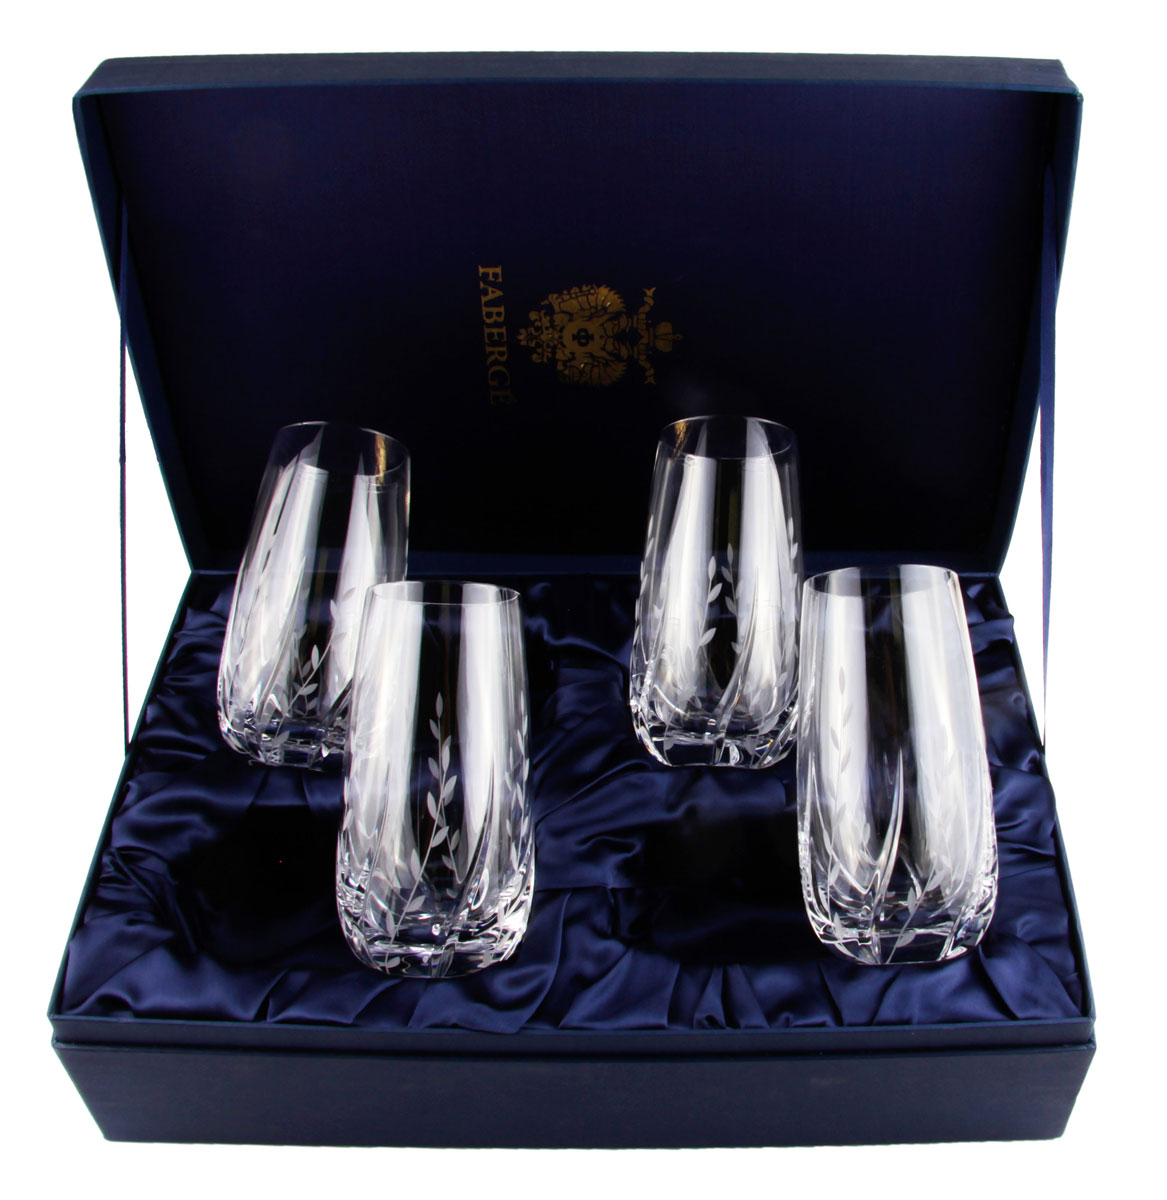 Комплект из 4 стаканов для воды и сока. Хрусталь, гранение, House of Faberge. Конец XX века